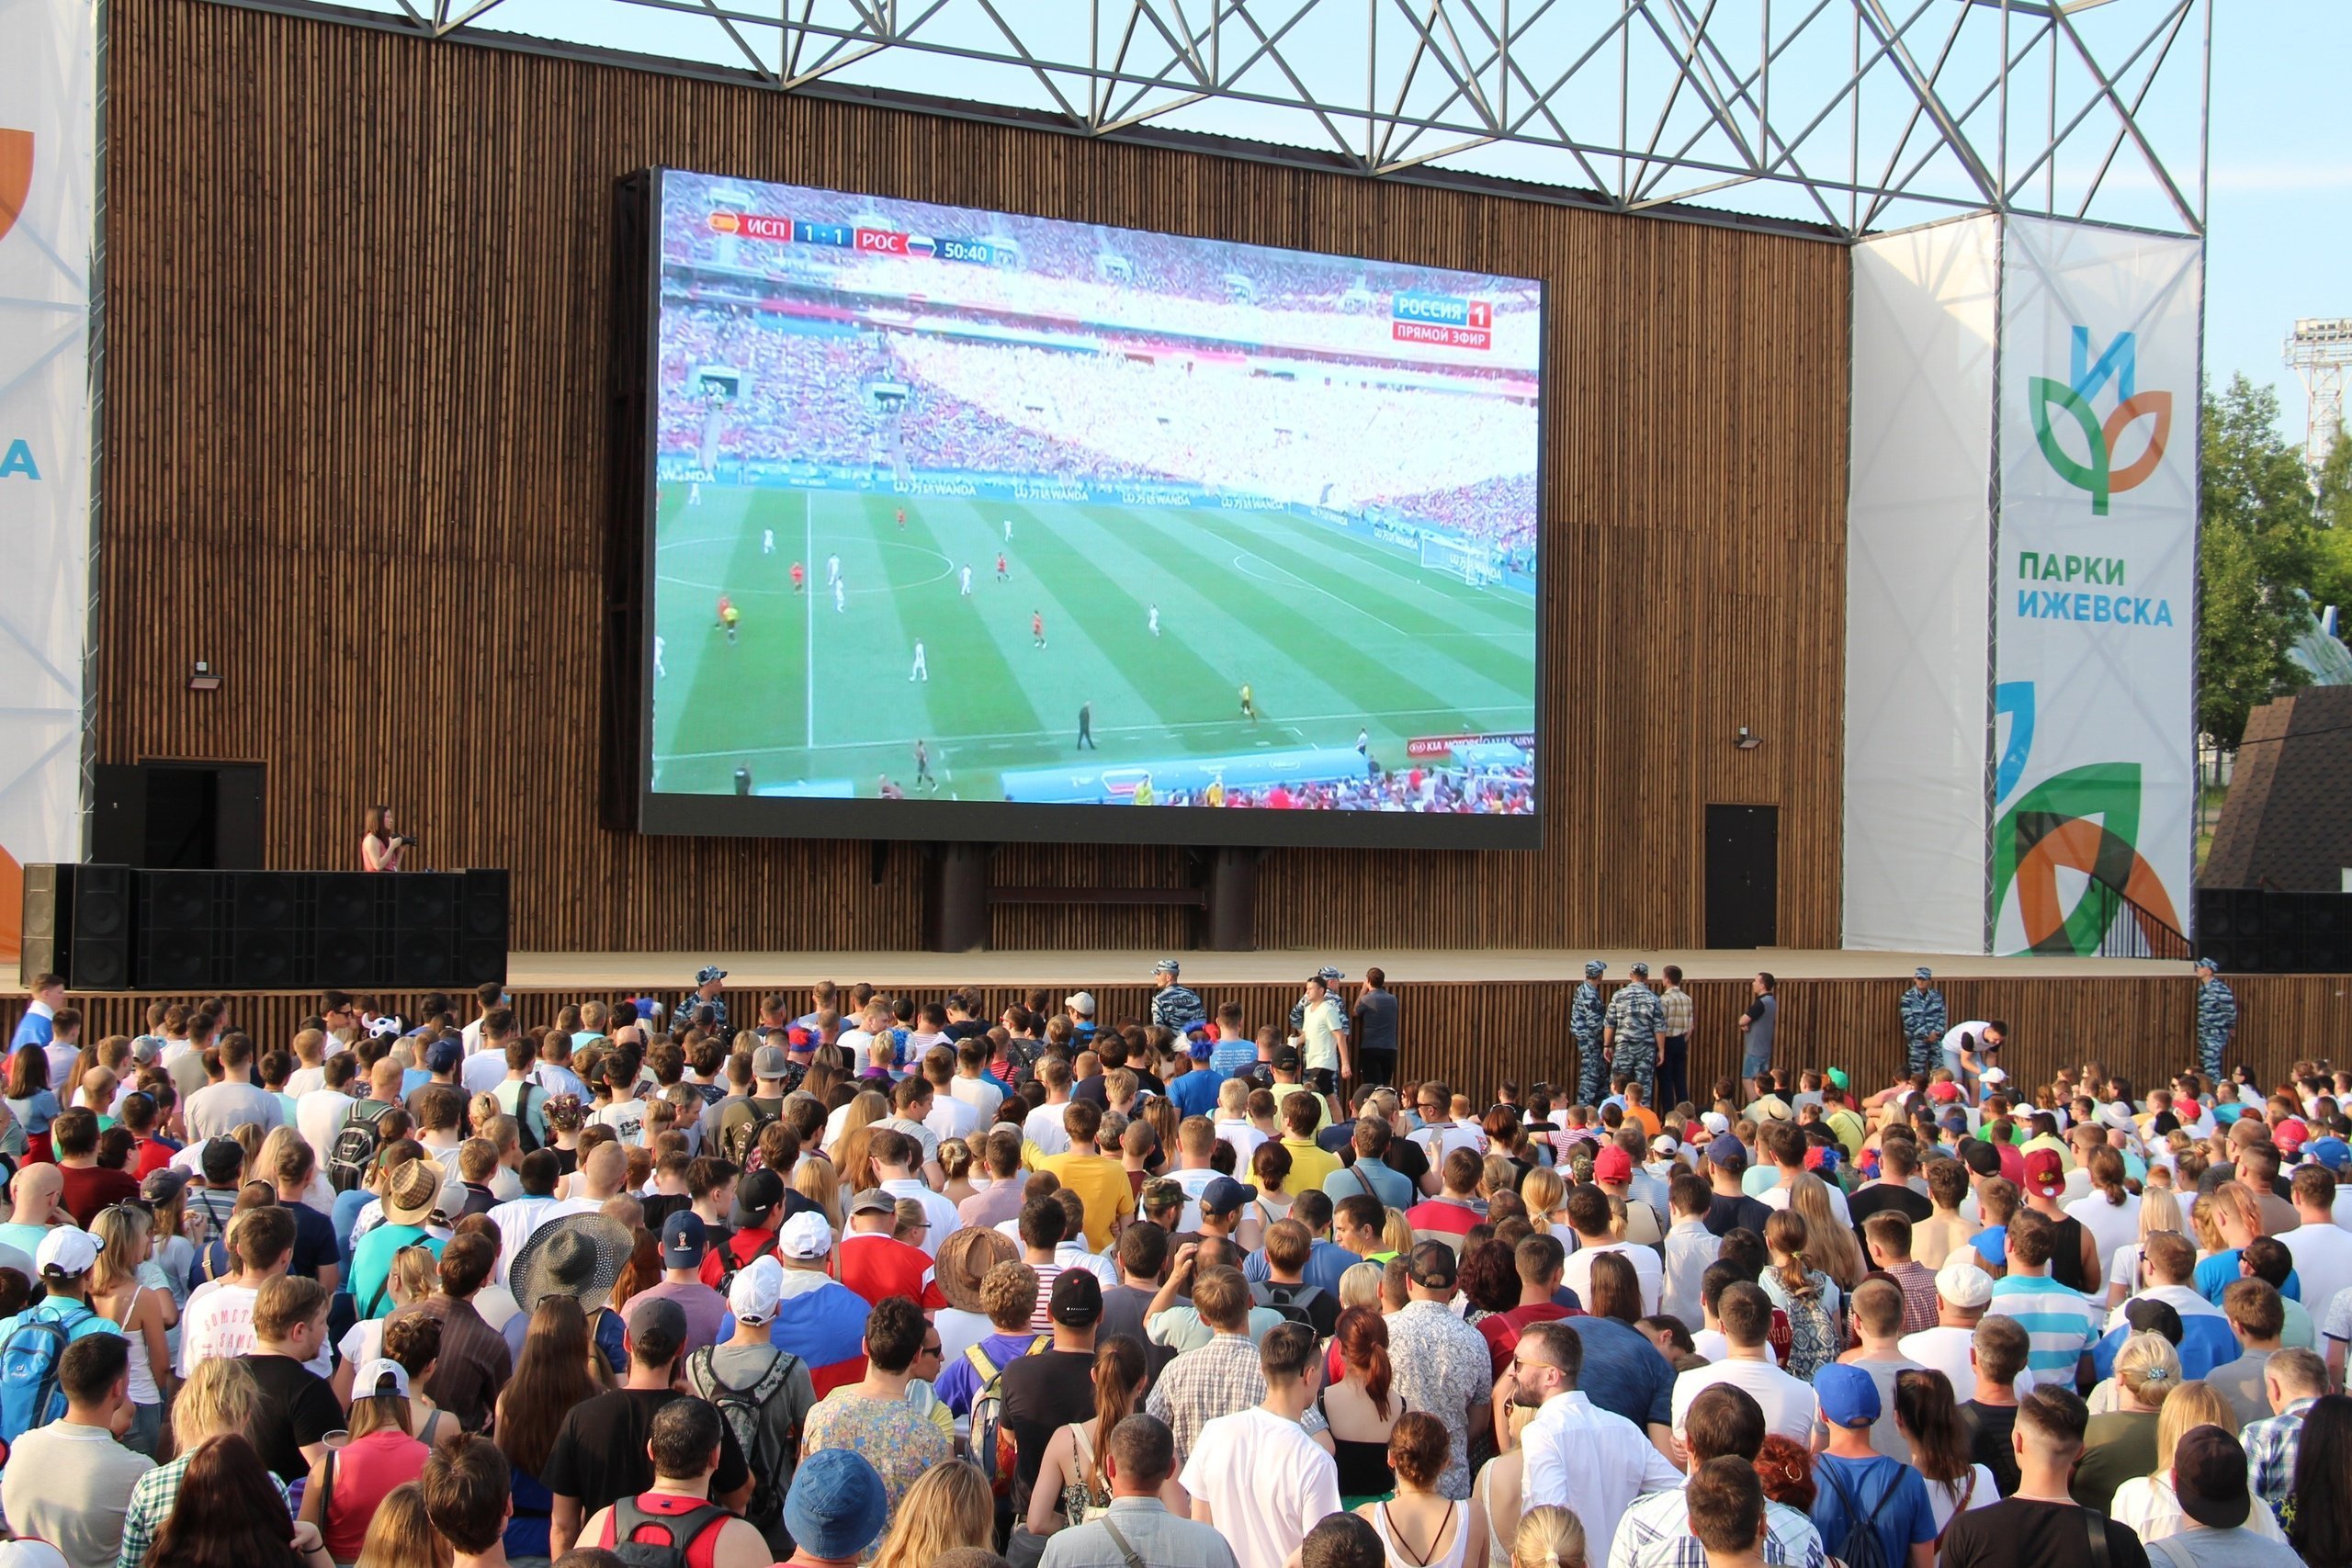 

В Ижевске болельщики смогут бесплатно посмотреть матчи Евро-2020

